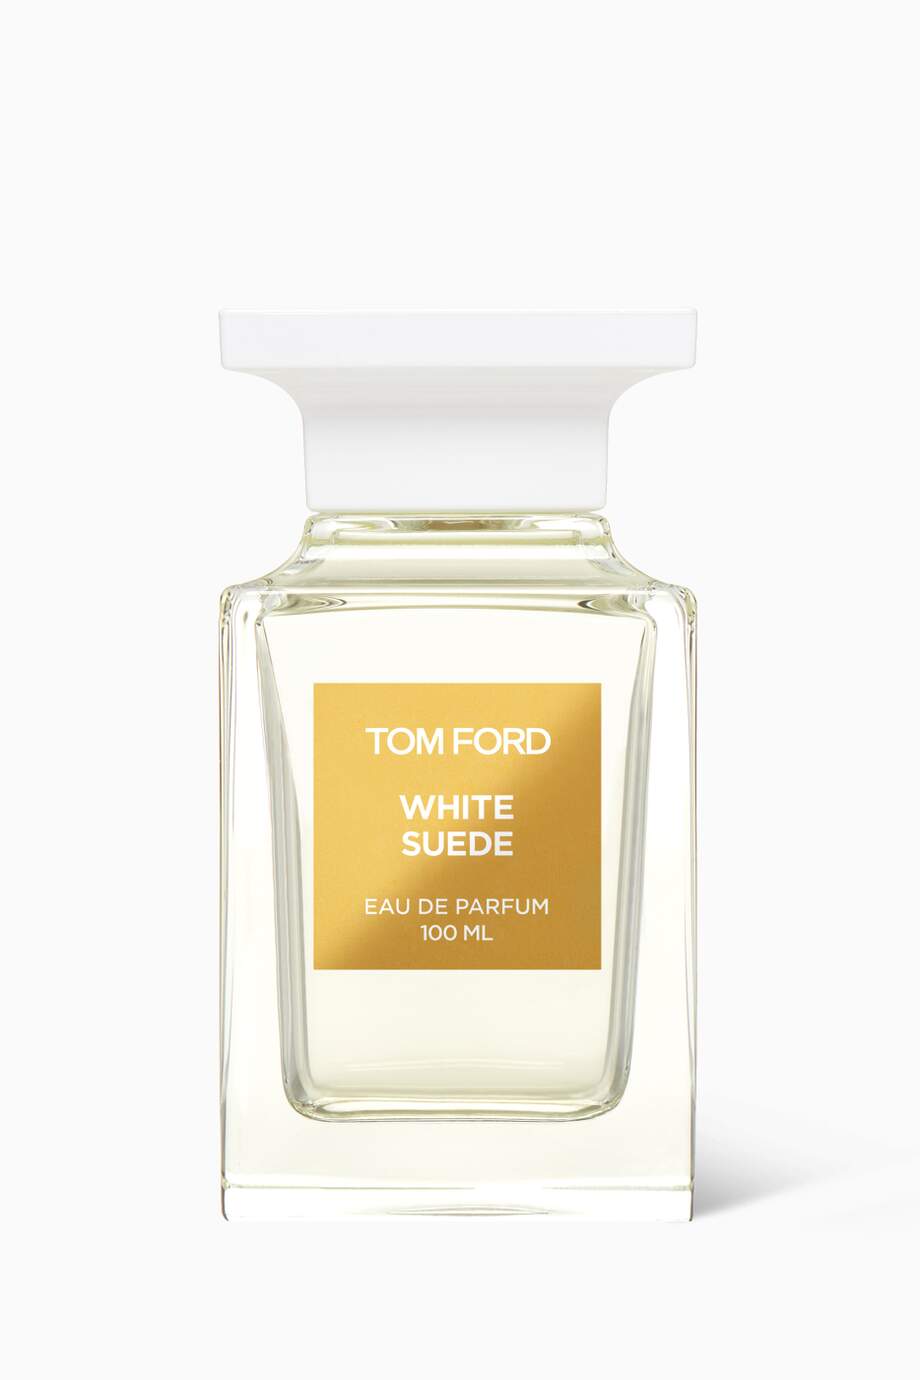 Tom Ford White Suede Eau De Parfum 100ML